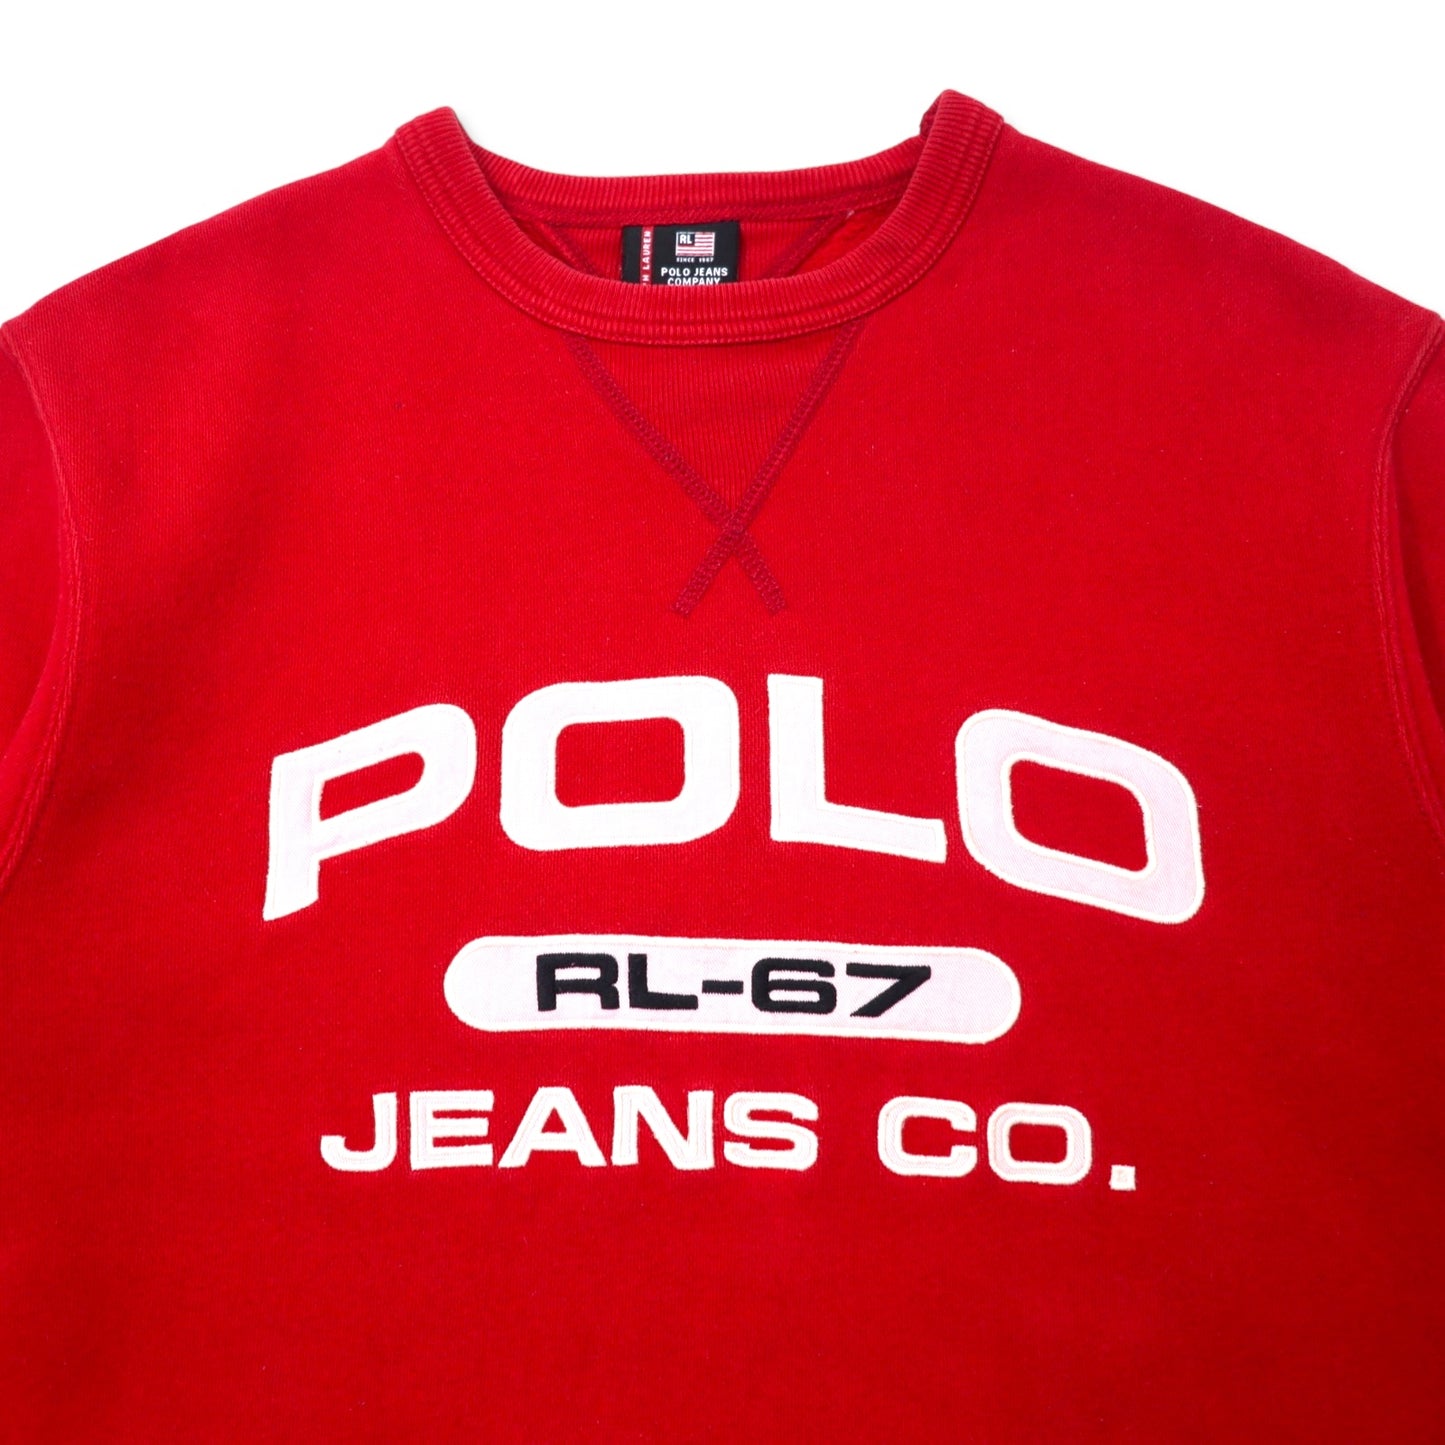 POLO JEANS COMPANY RALPH LAUREN 90年代 ロゴ刺繍 スウェット S レッド コットン